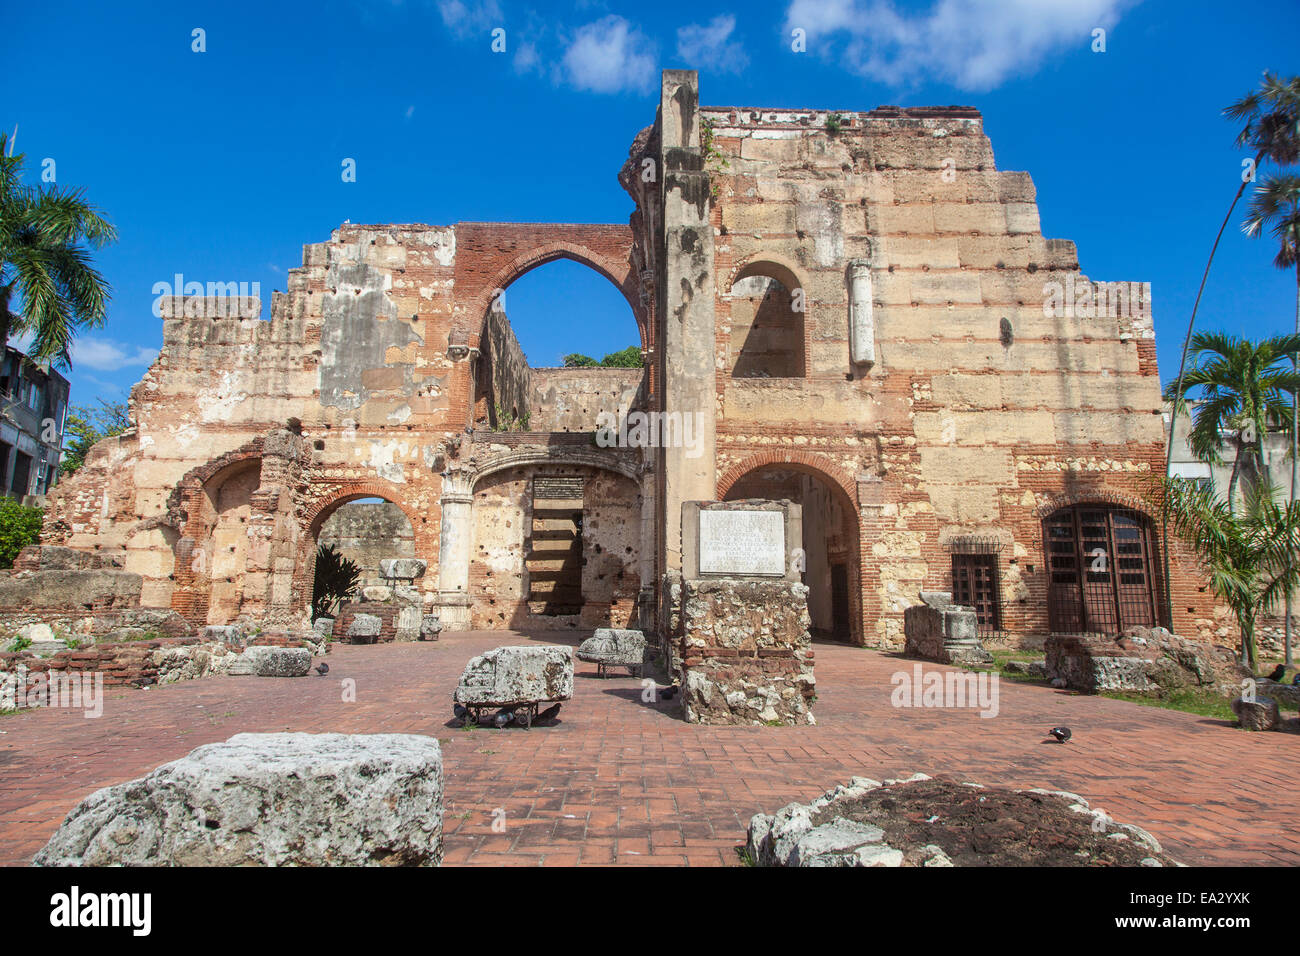 Ruinas del Hospital San Nicolas de Bari, Colonial Zone, UNESCO Site, Santa Domingo, Dominican Republic, West Indies, Caribbean Stock Photo